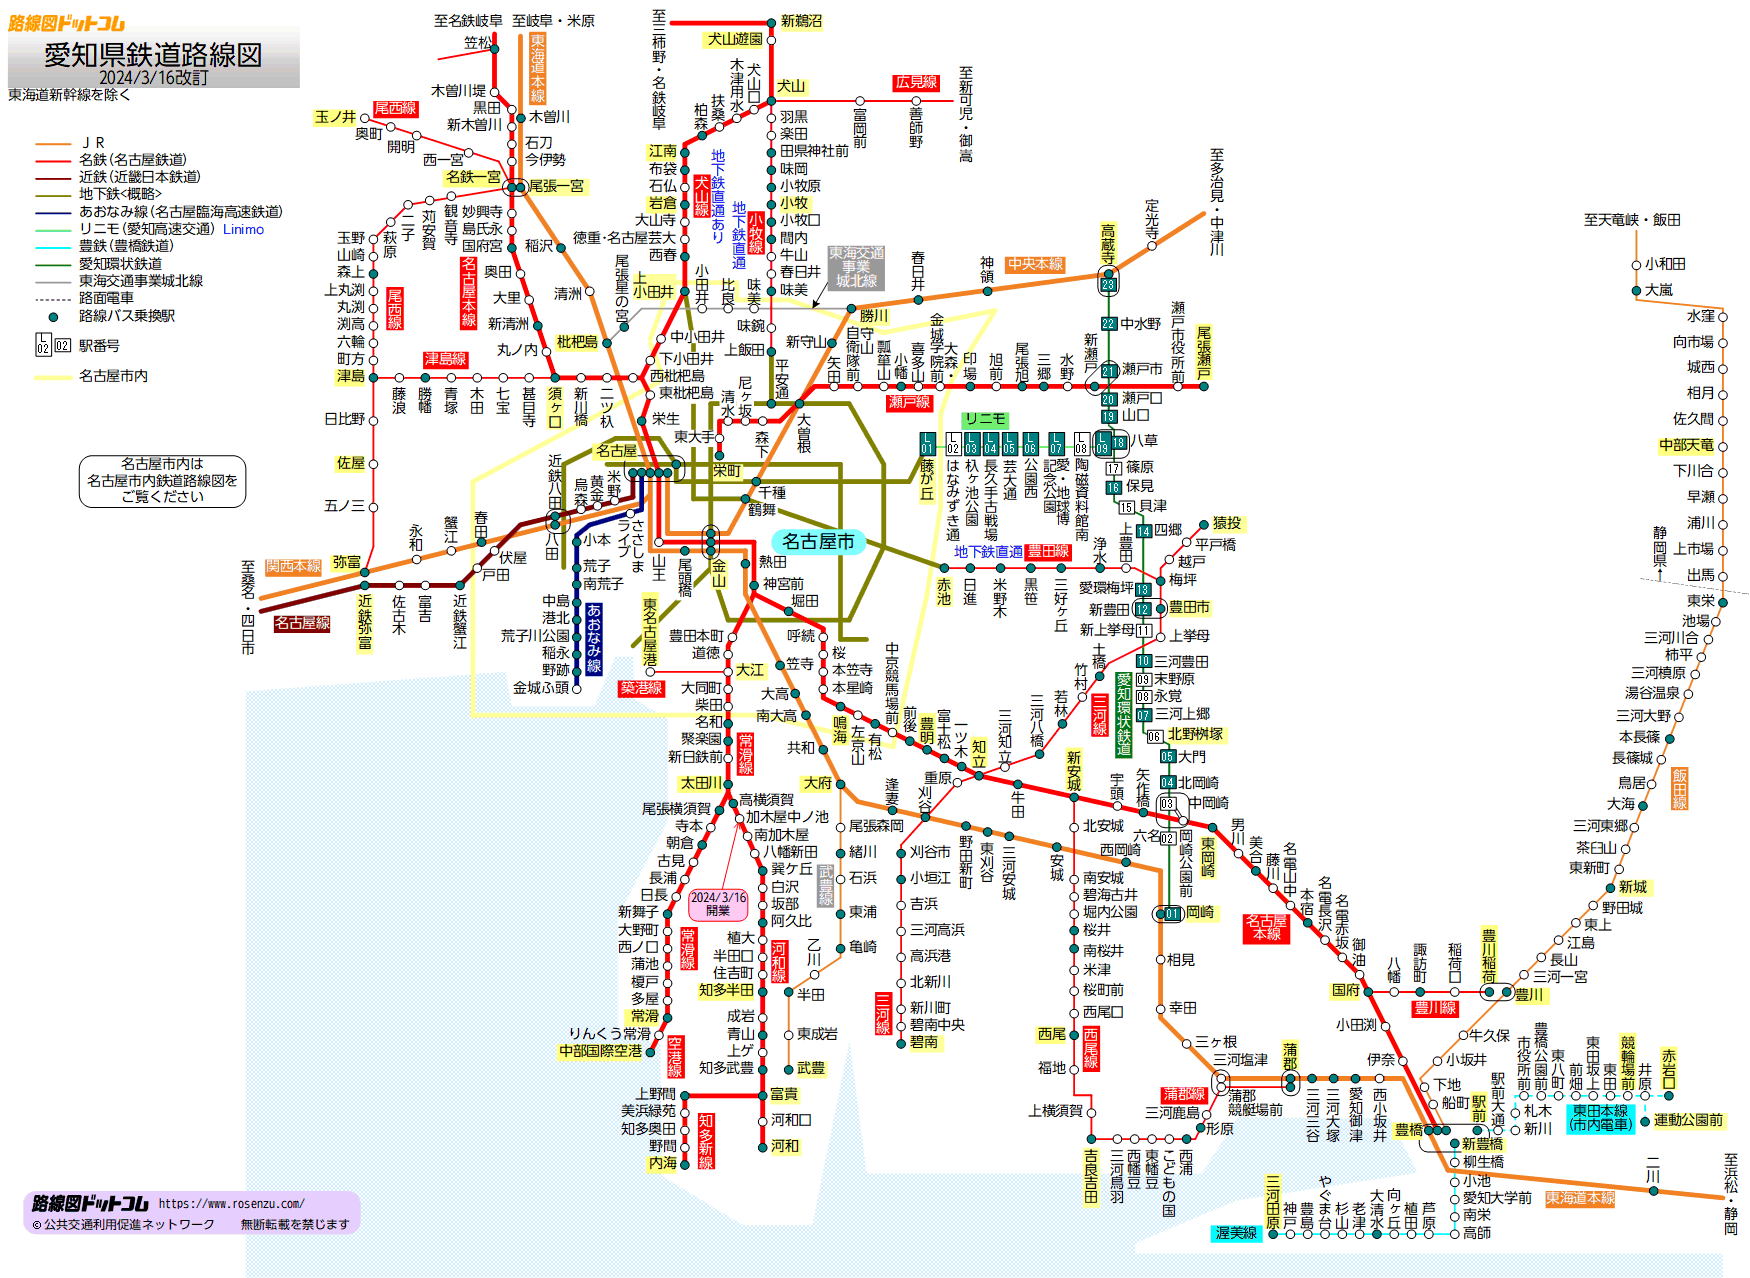 愛知県鉄道路線図